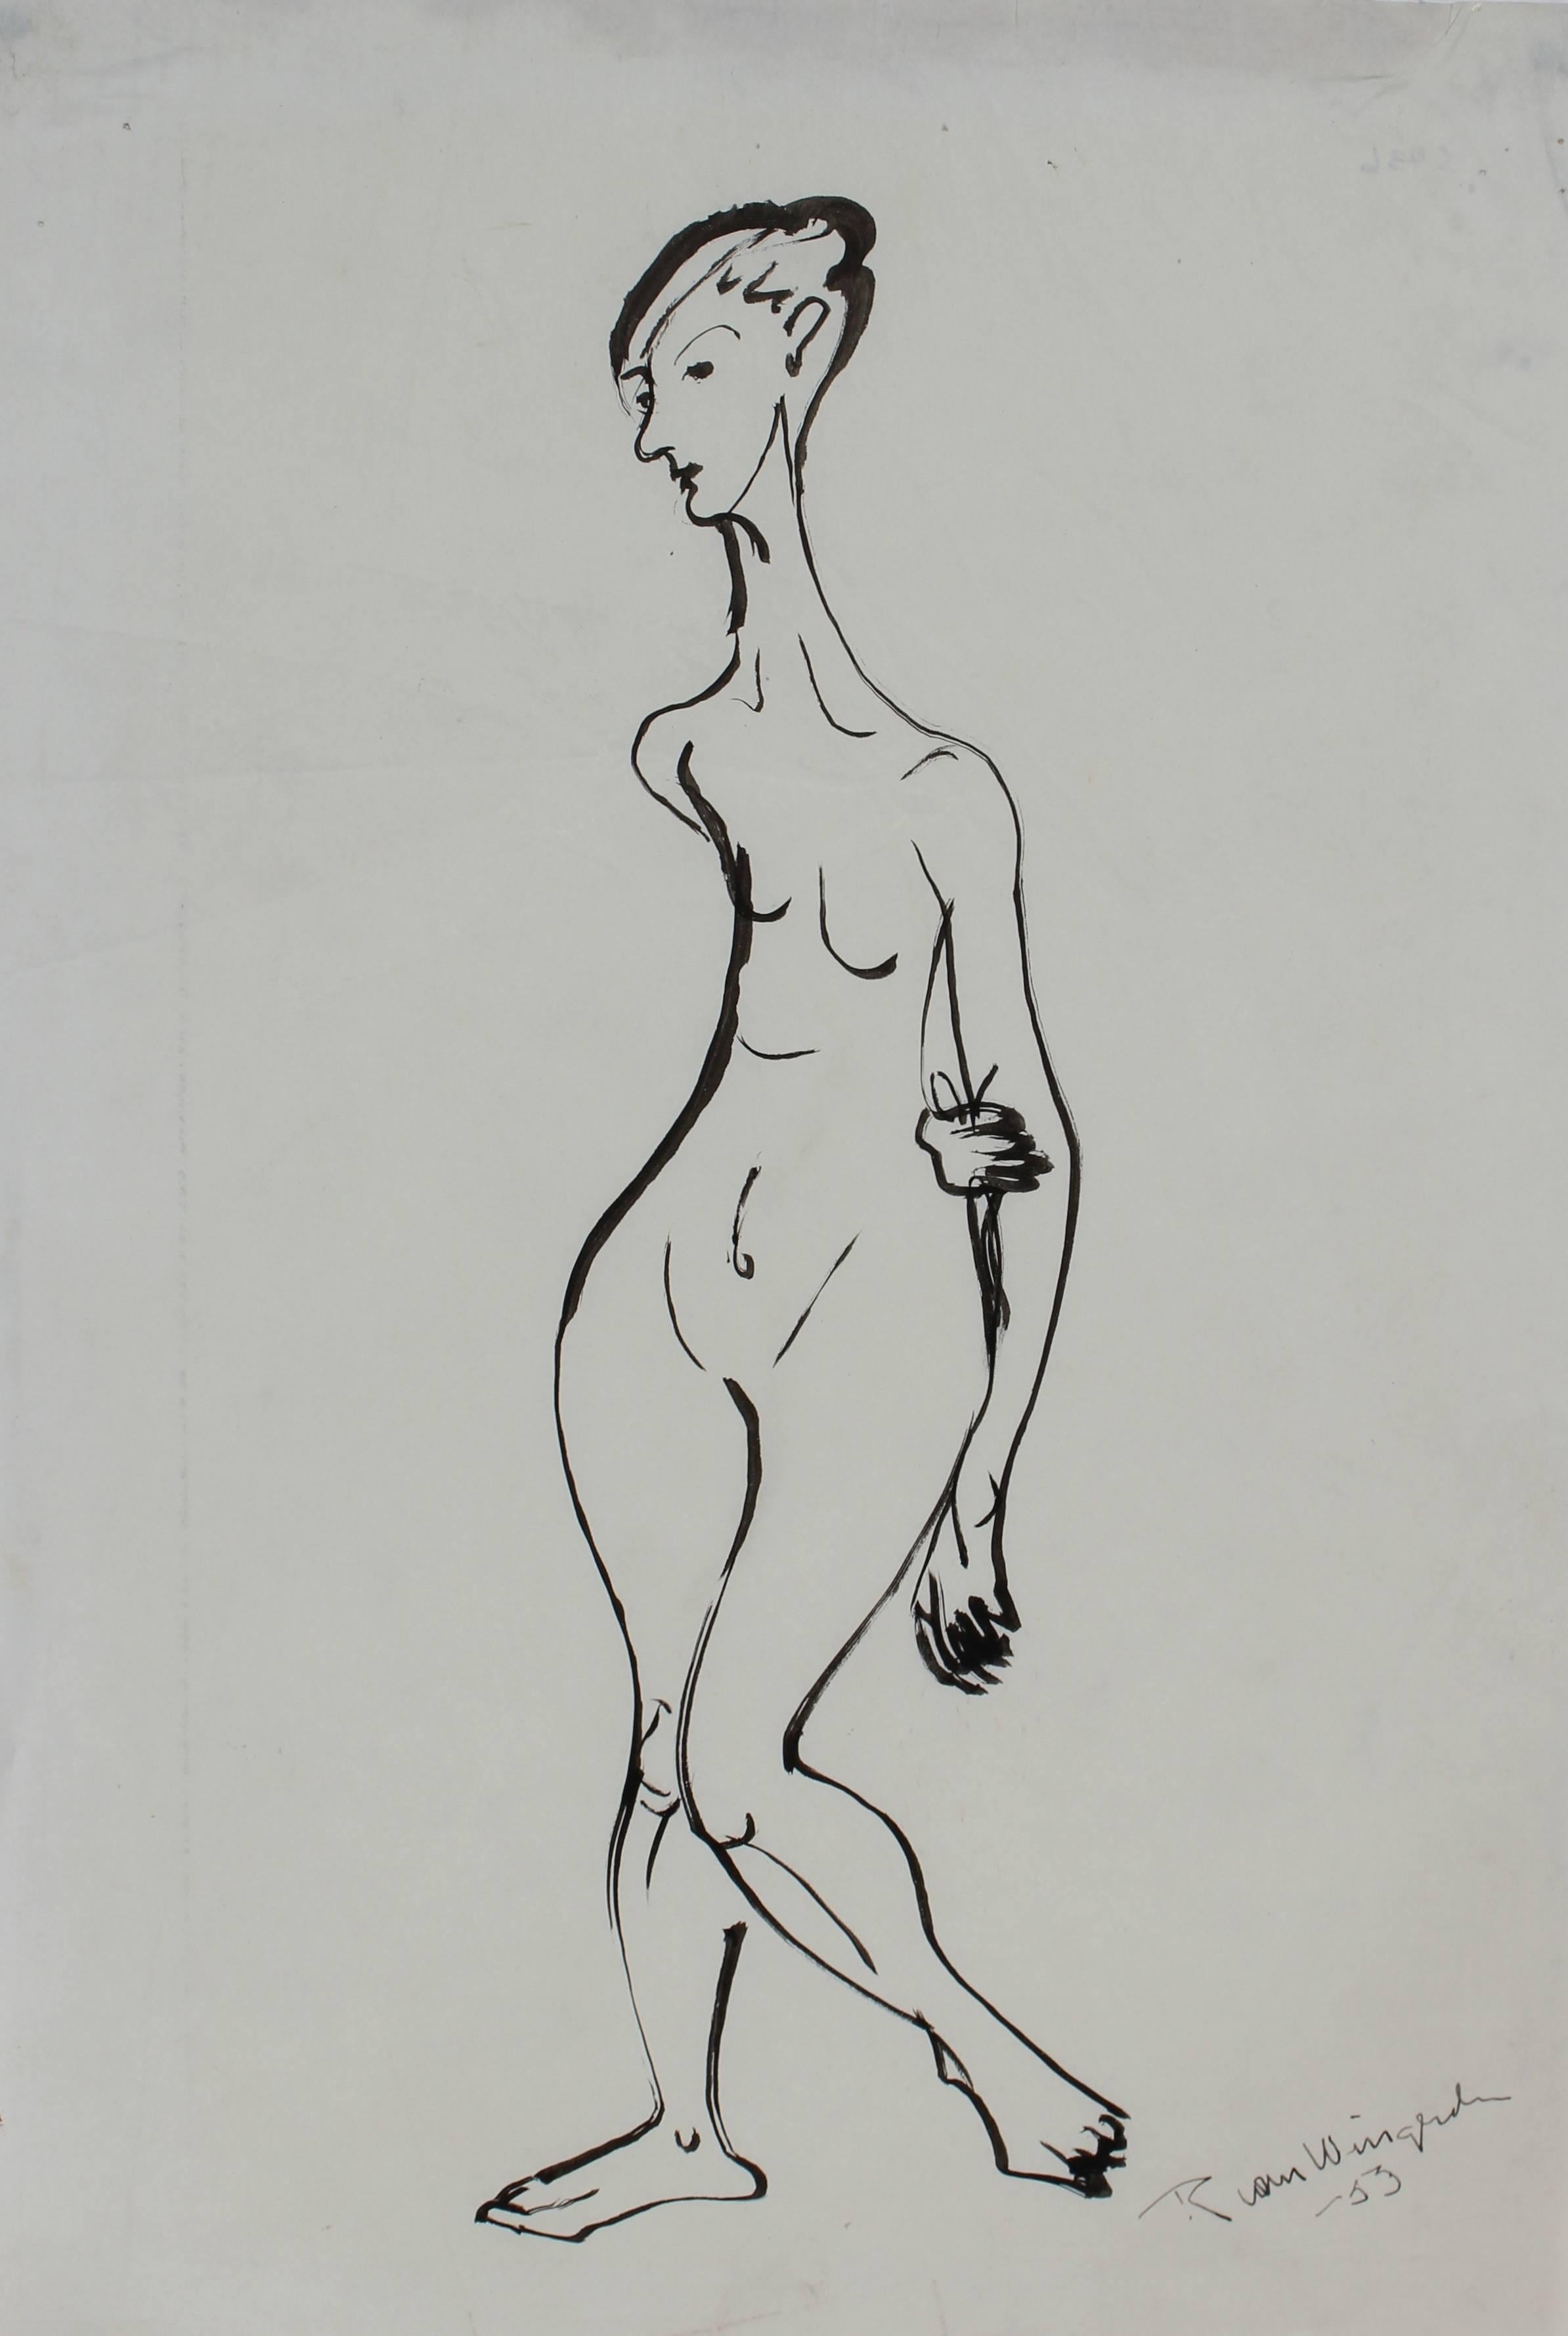 Richard Van Wingerden Nude - Expressionist Figure Study in Ink, Mid 20th Century